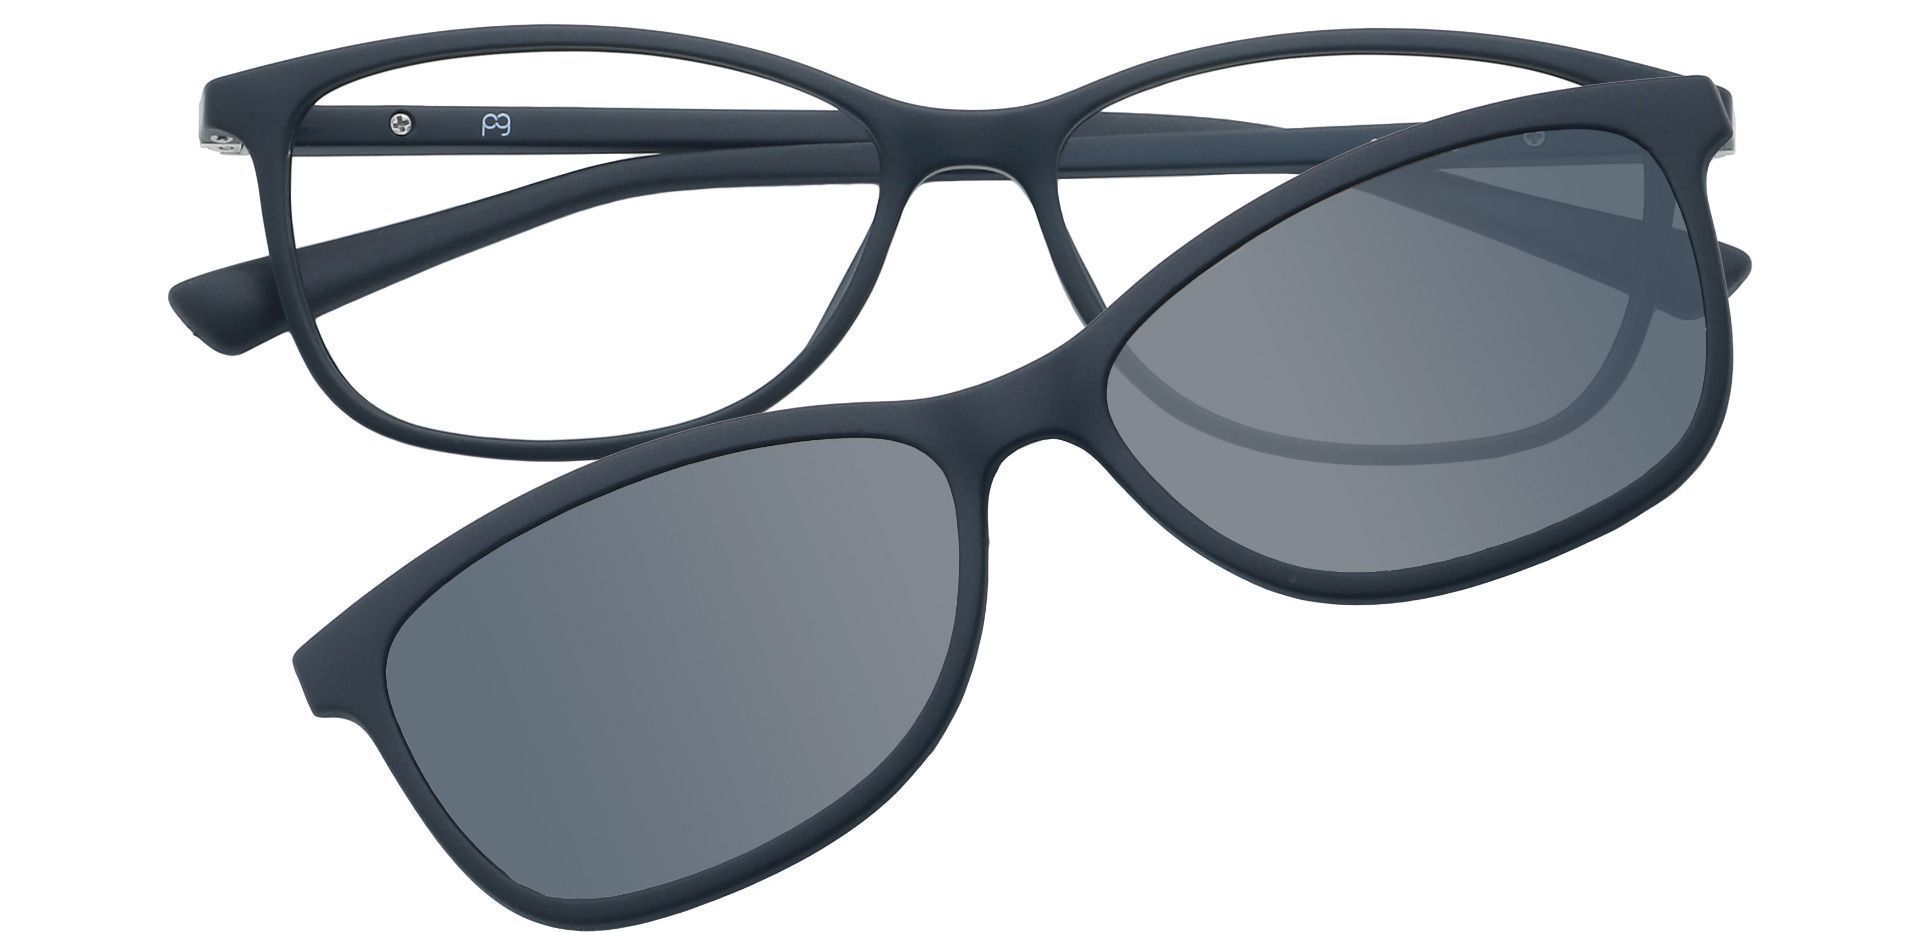 Nia Oval Non-Rx Glasses - Black